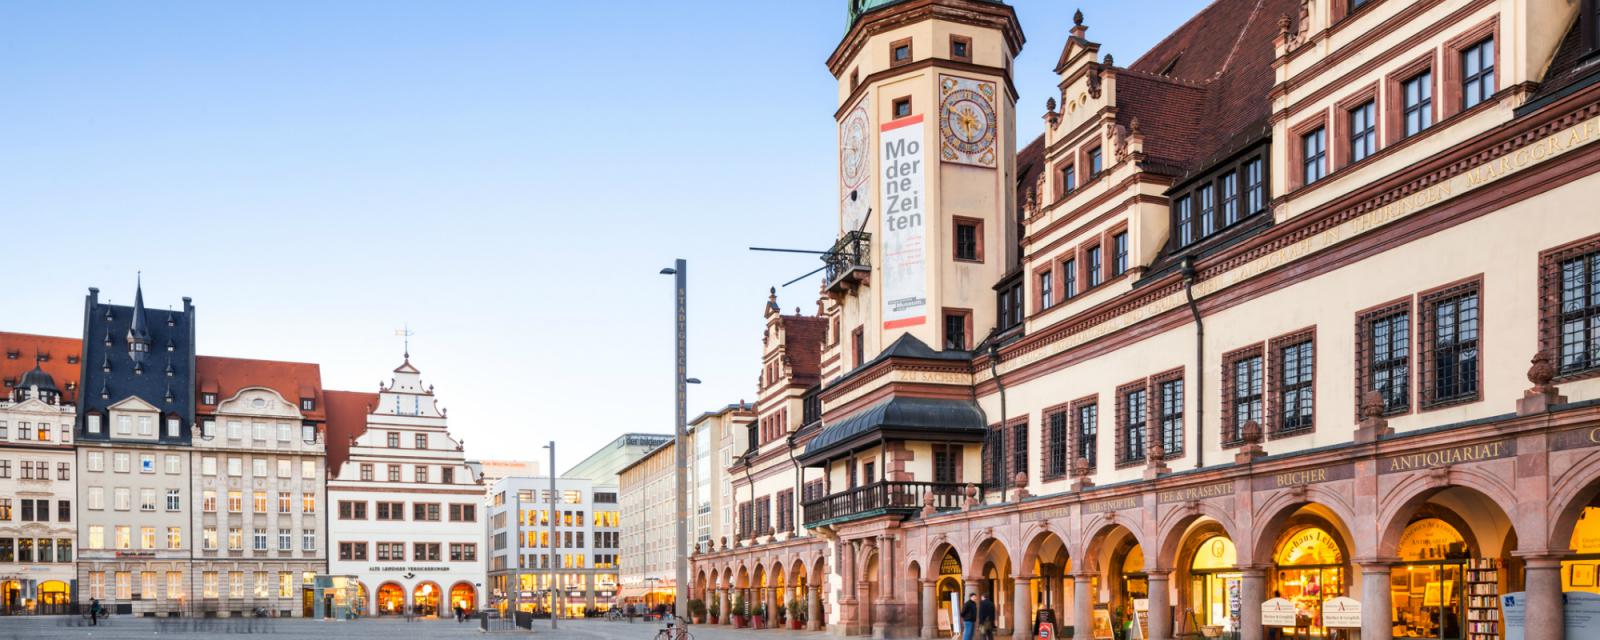 10 redenen om een stedentrip naar Leipzig in te plannen 